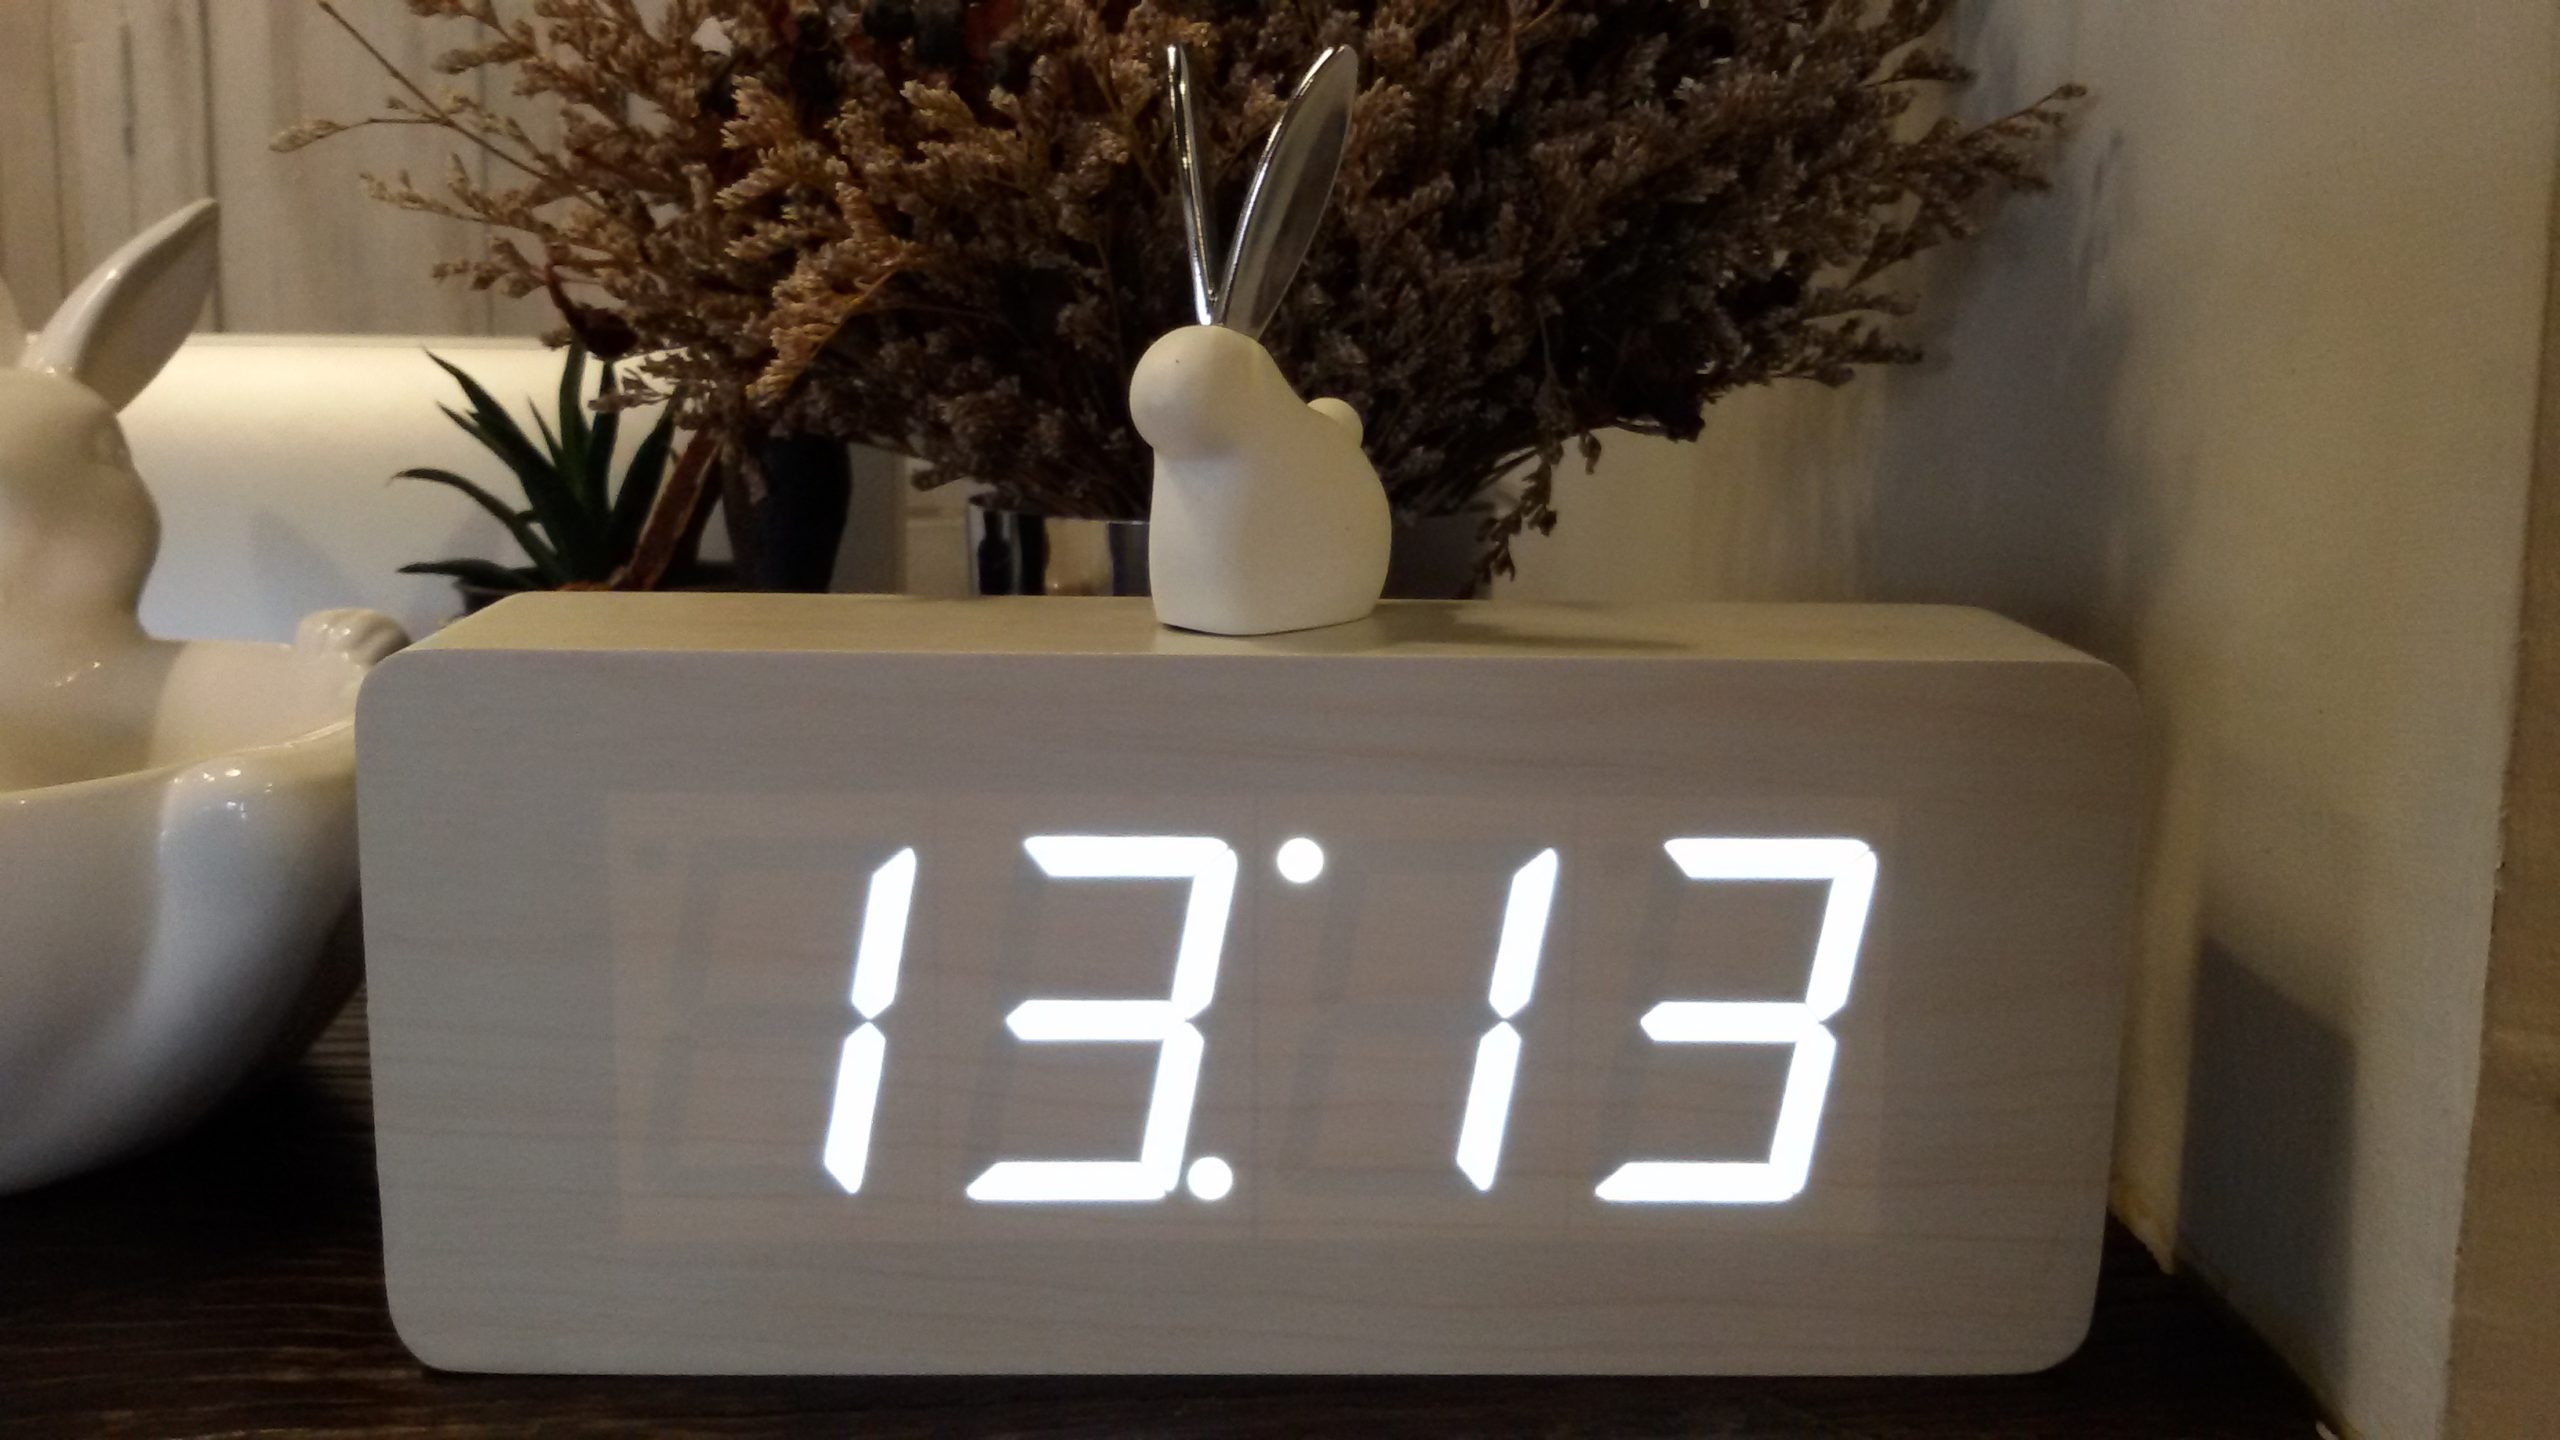 Что значит замеченное время. 11 11 Электронные часы. Одинаковые цифры на часах. Одинаковые цифры часов. Часы электронные зеркальные.